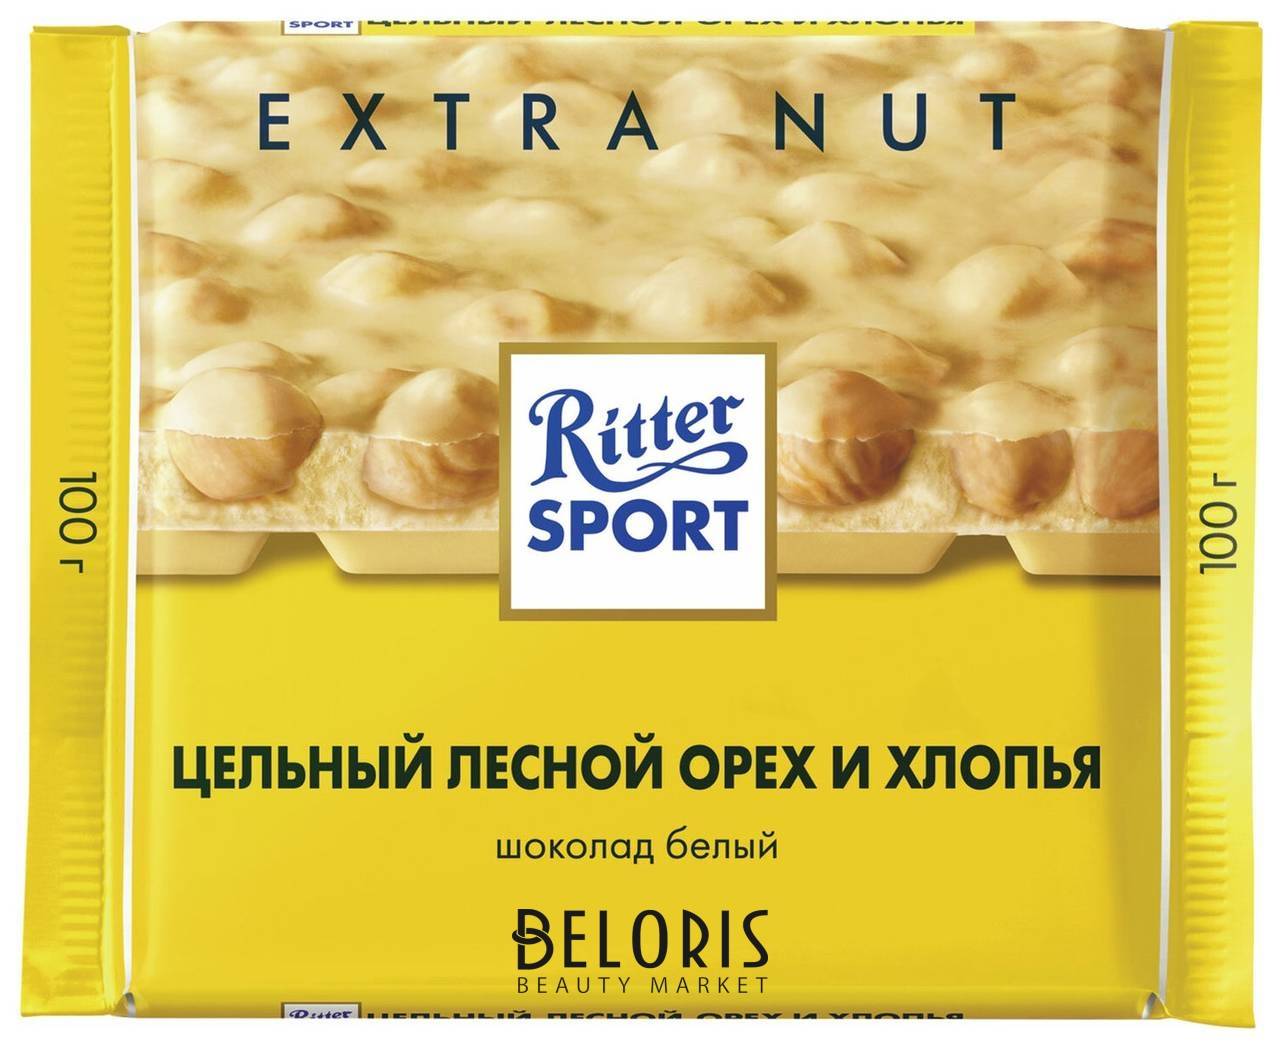 Шоколад Ritter Sport Extra Nut, белый, с цельным лесным орехом и хлопьями, 100 г, германия, 7016 Ritter sport